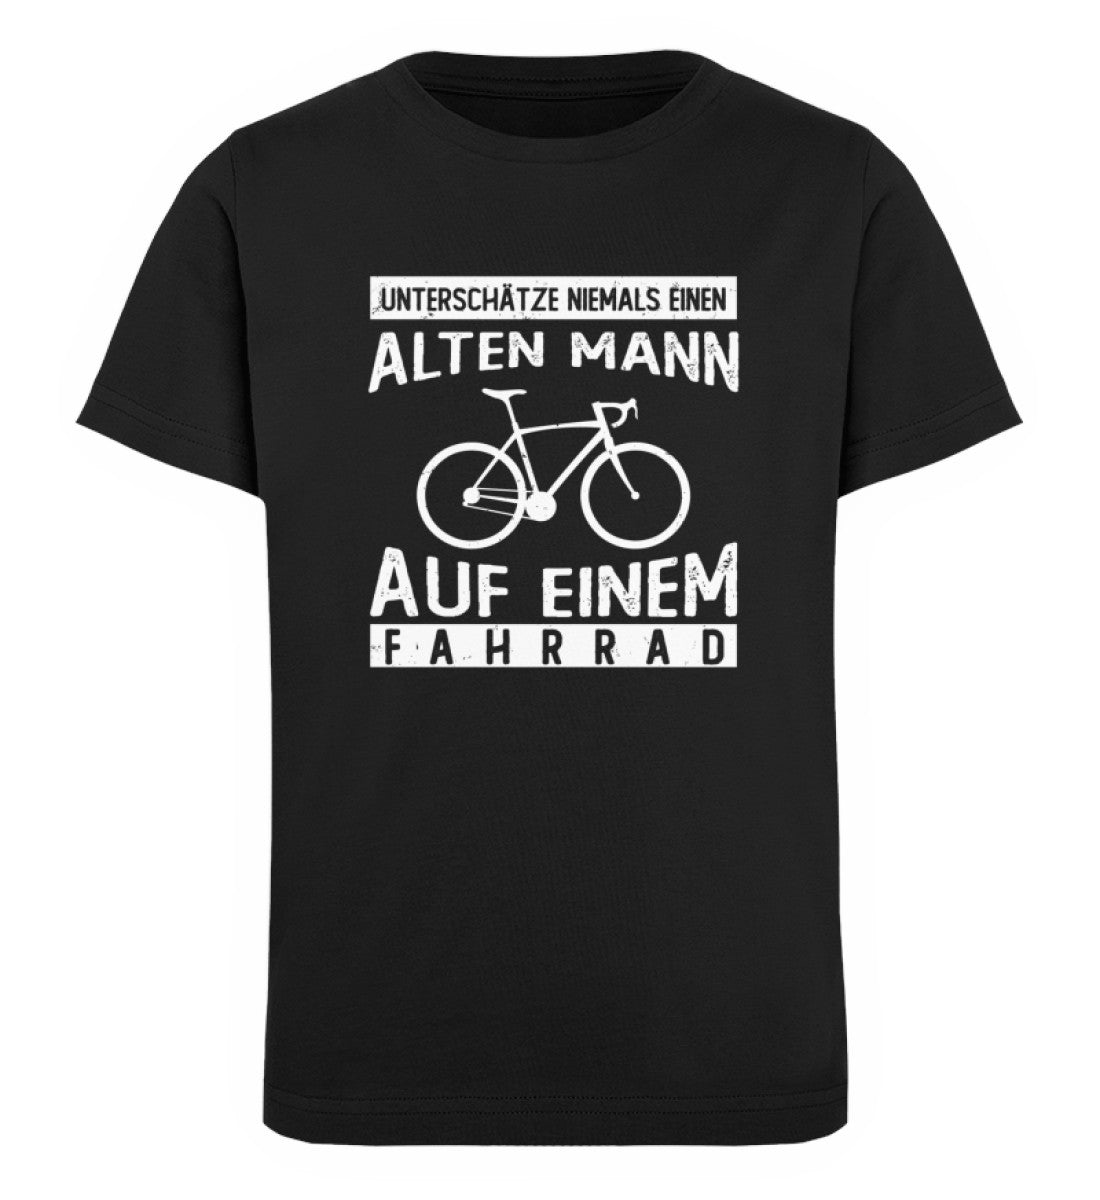 Alter Mann auf einem Fahrrad - Kinder Premium Organic T-Shirt fahrrad Schwarz